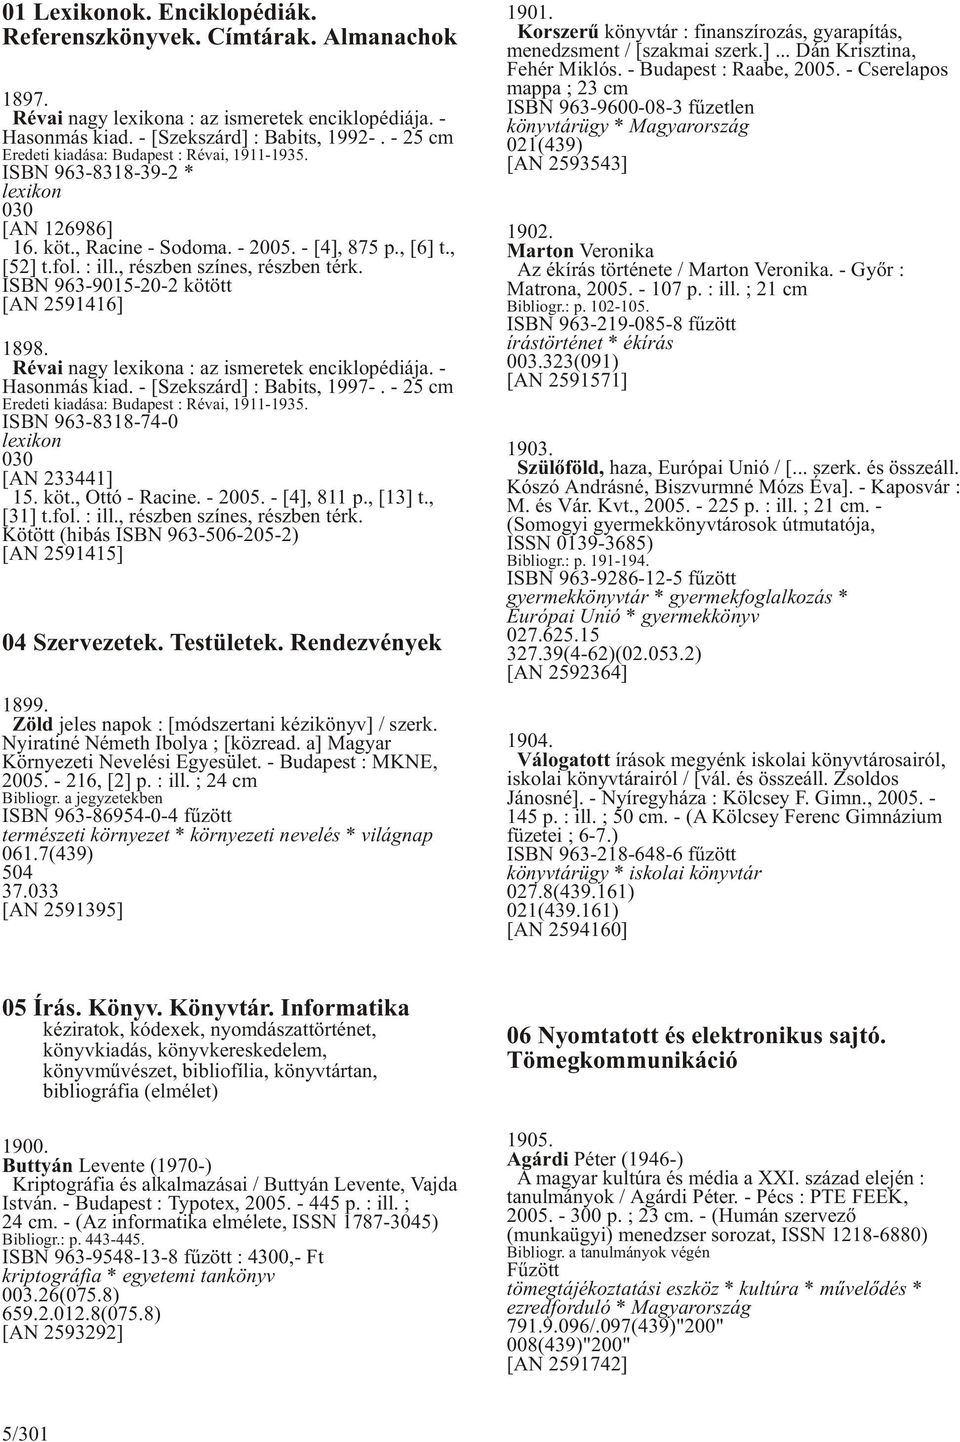 , részben színes, részben térk. ISBN 963-9015-20-2 kötött [AN 2591416] 1898. Révai nagy lexikona : az ismeretek enciklopédiája. - Hasonmás kiad. - [Szekszárd] : Babits, 1997-.